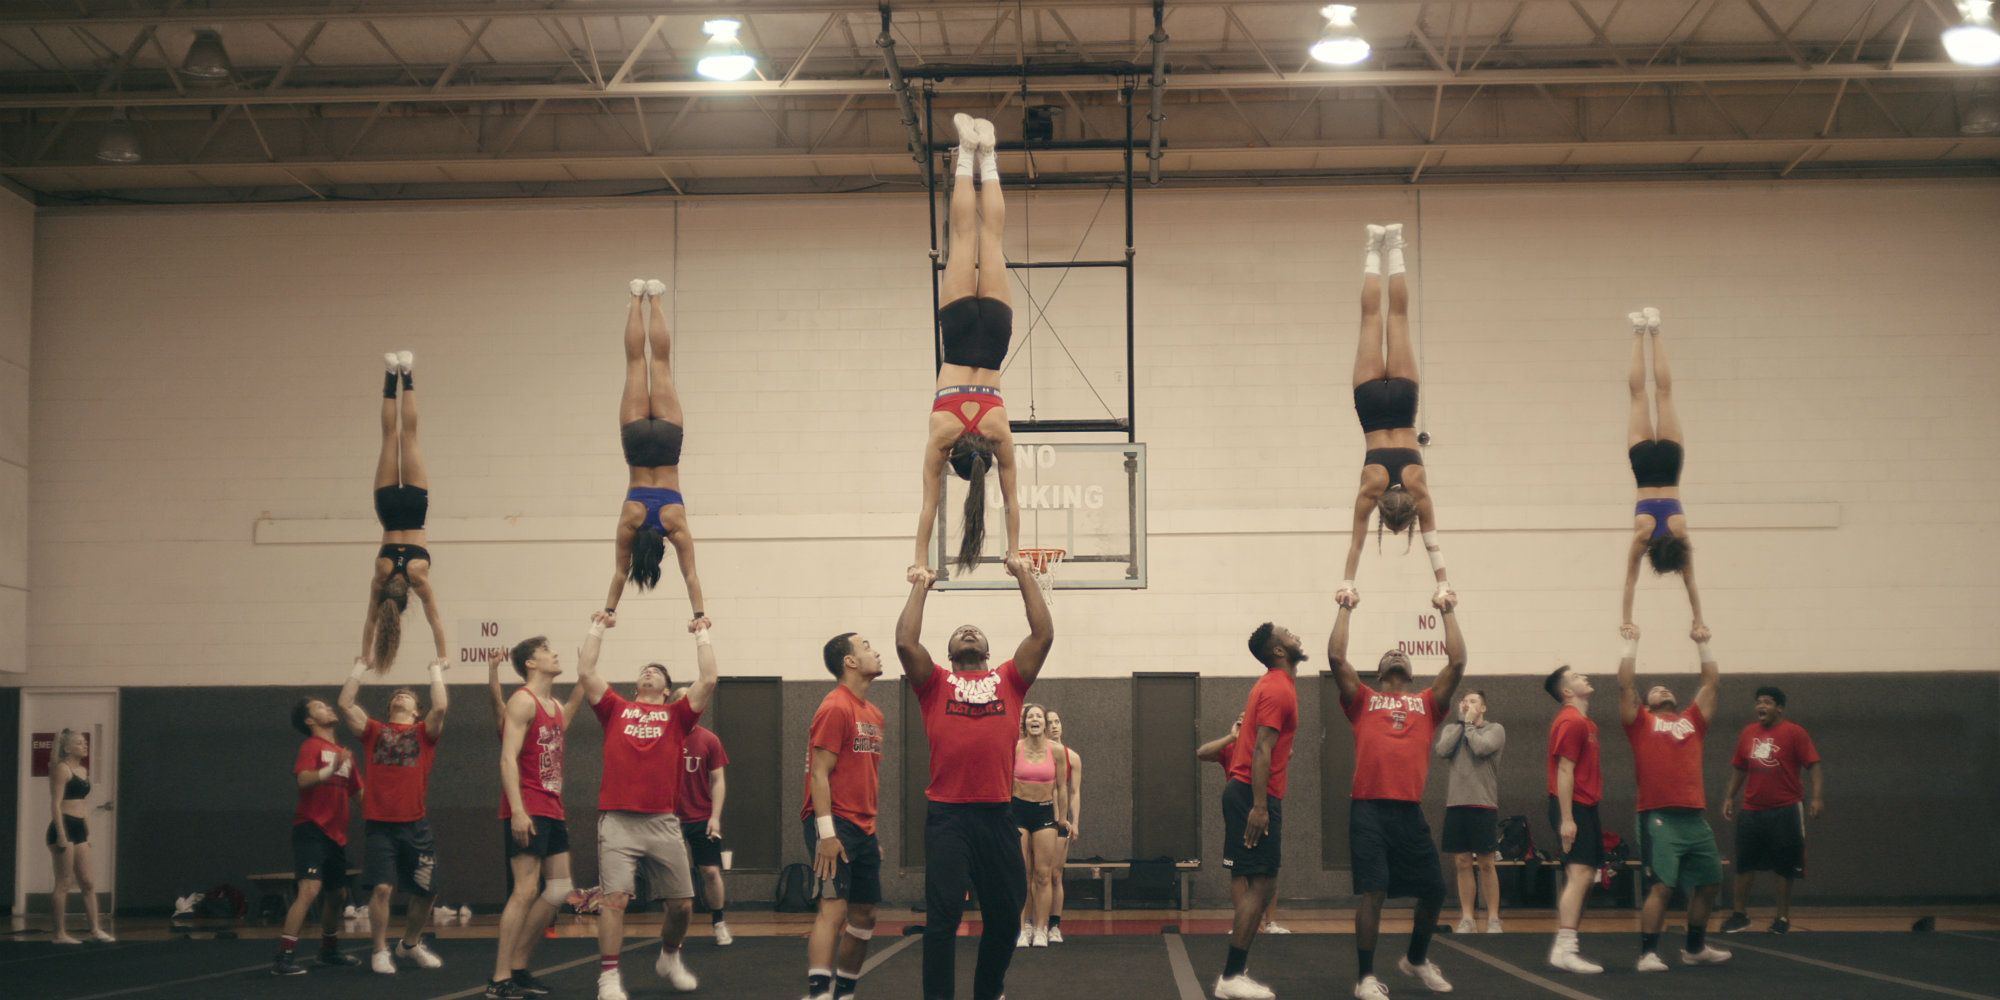 Netflix TV Show Cheer - cheerleaders doing stunts